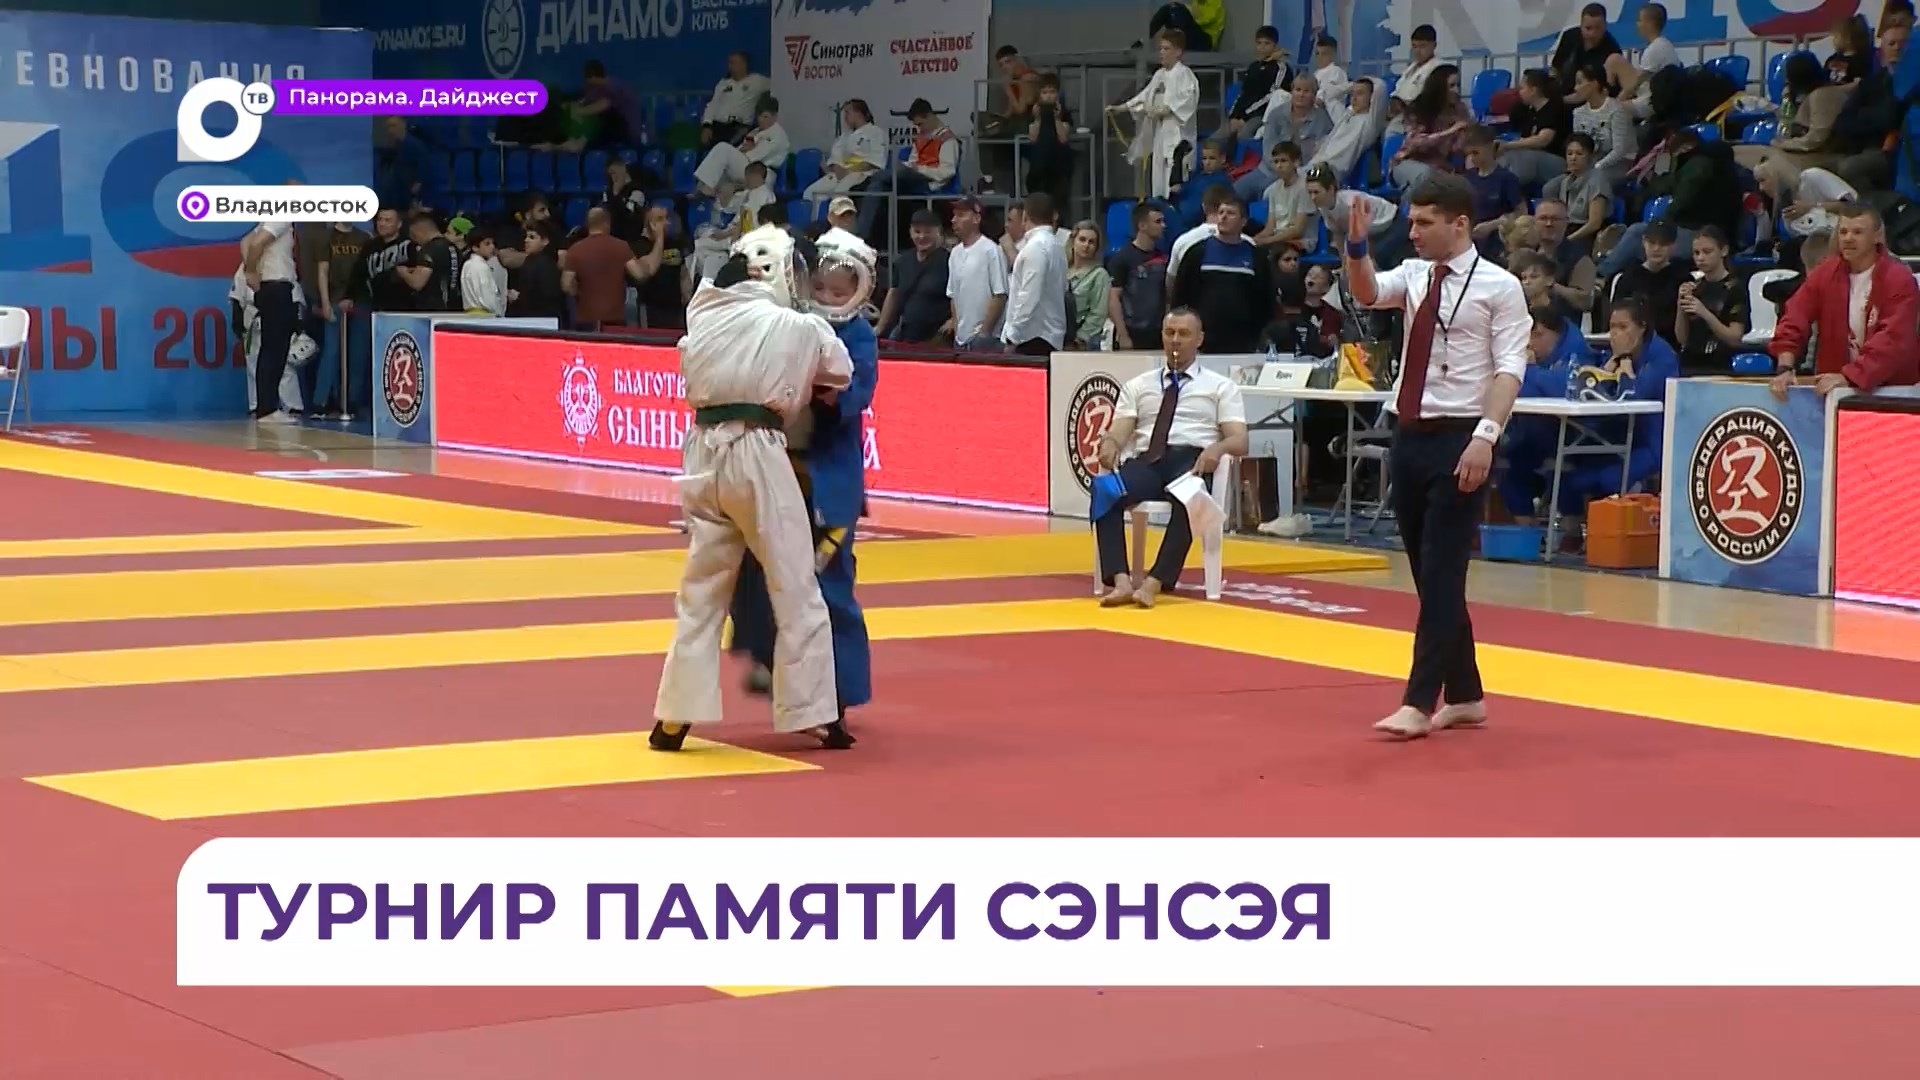 Сильнейшие кудоисты Приморья и десяти других регионов собрались во Владивостоке на Кубке Азумы